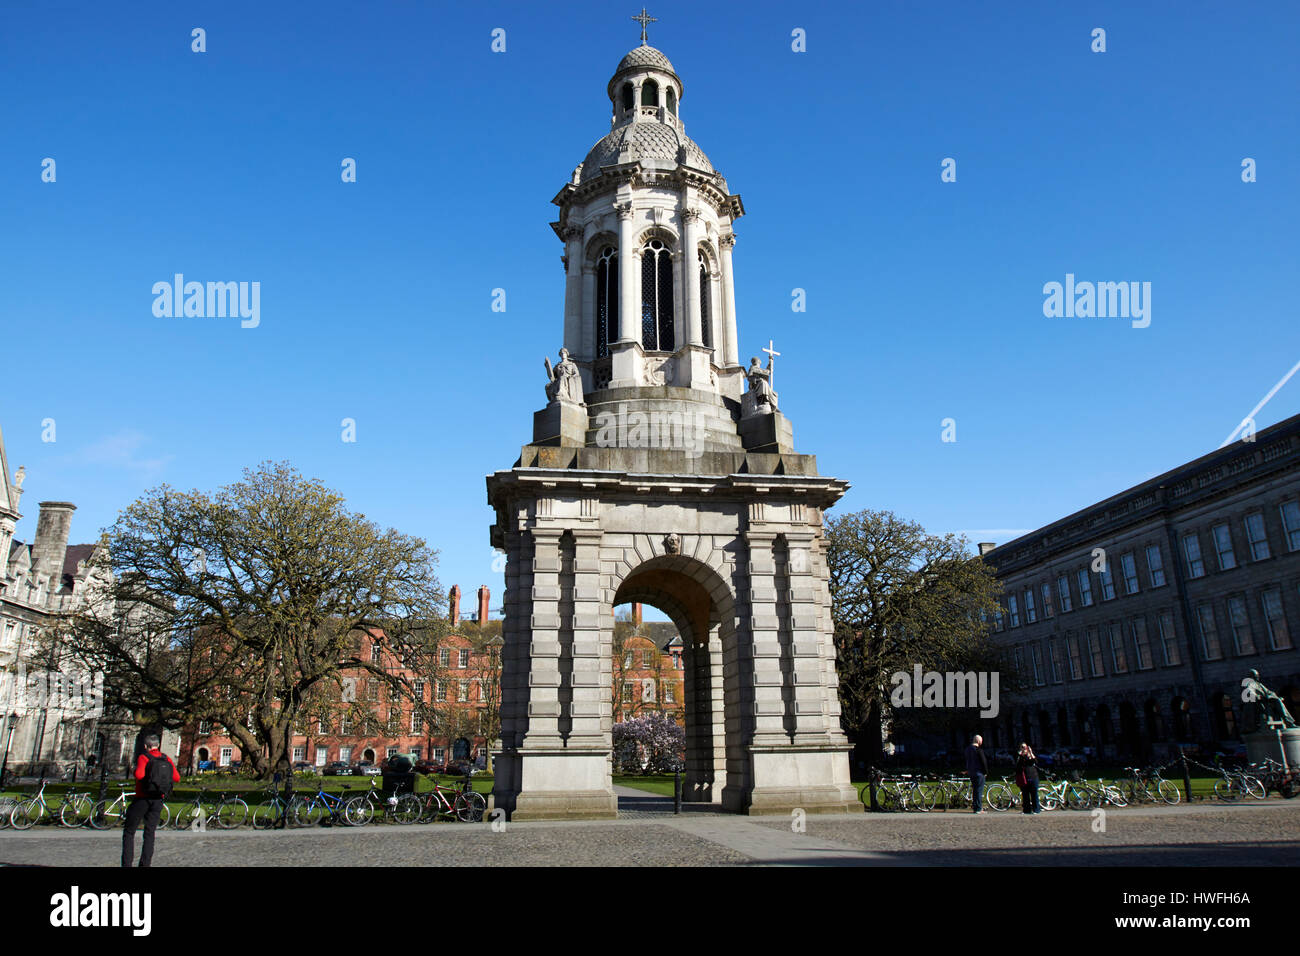 the campanile of trinity college Dublin in parliament square Republic of Ireland Stock Photo